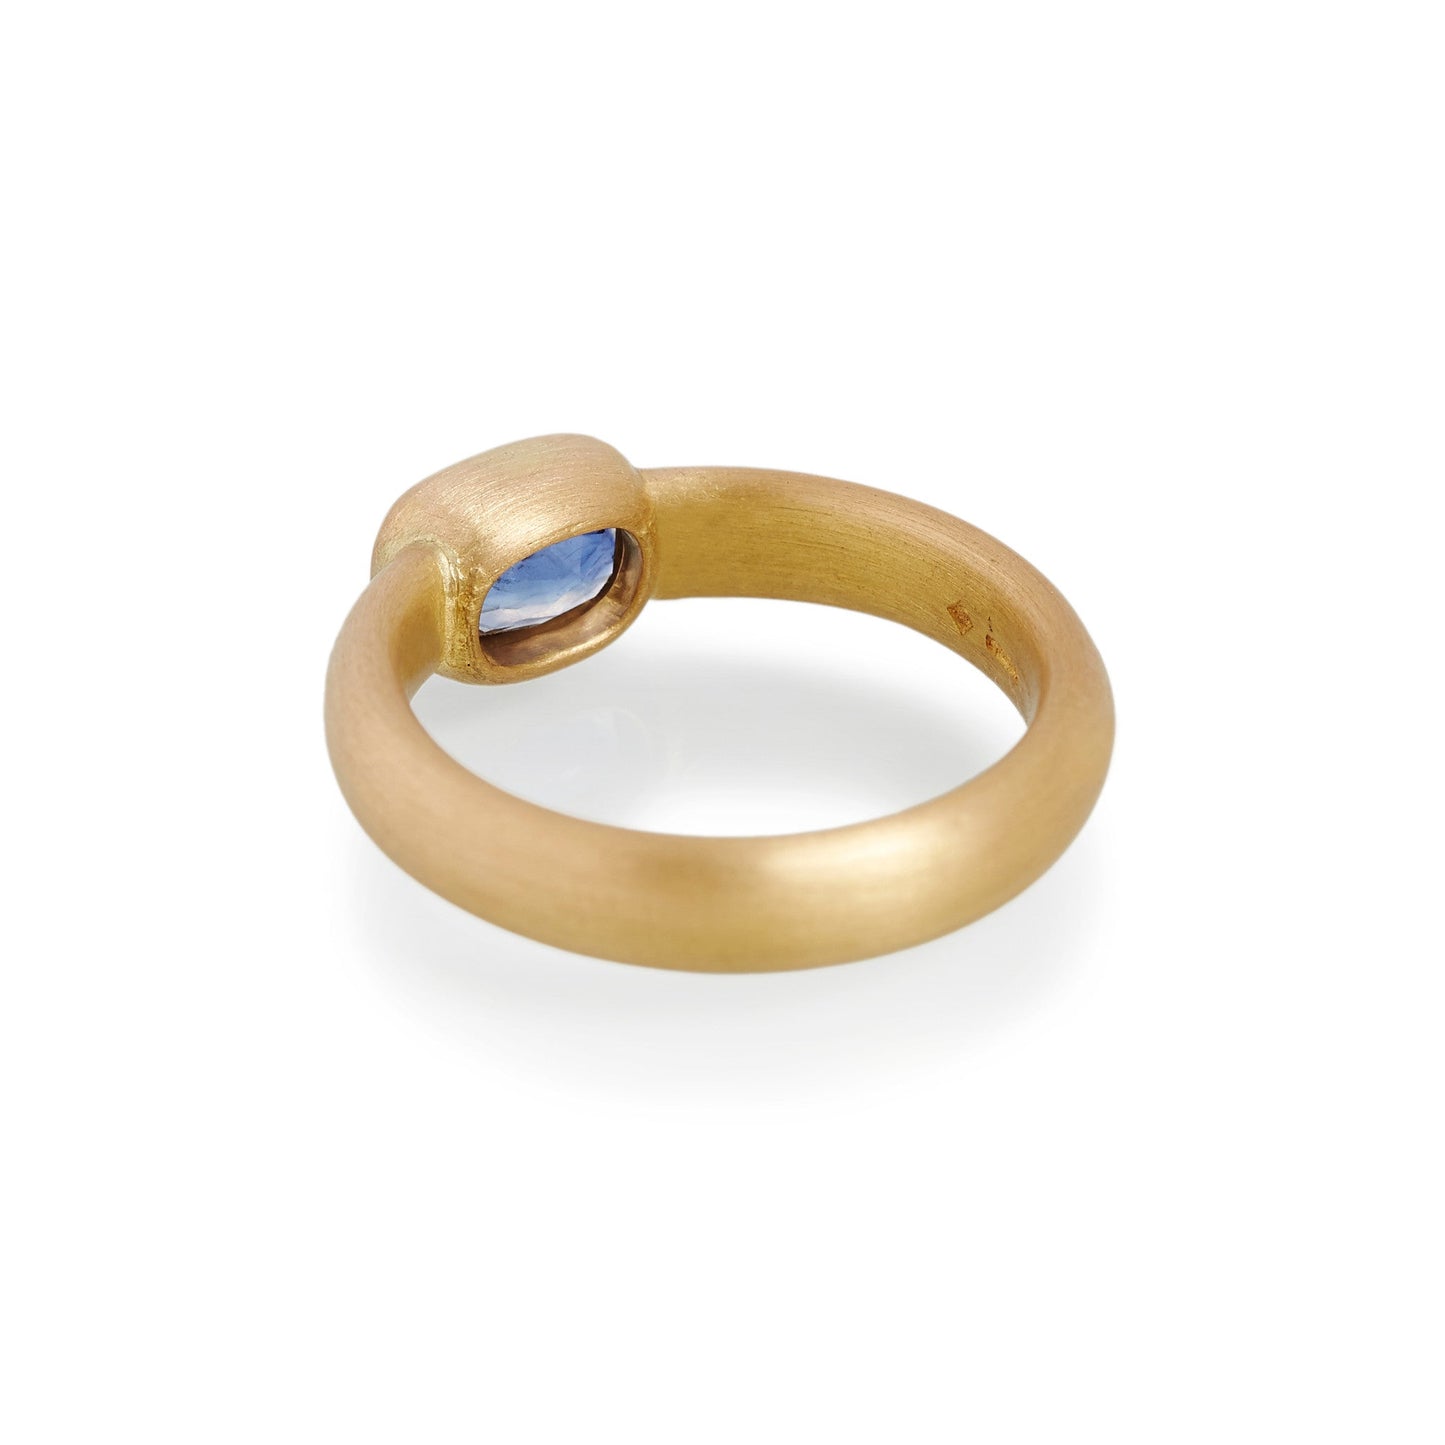 Cushion Cut Sapphire Ring, 22ct Gold